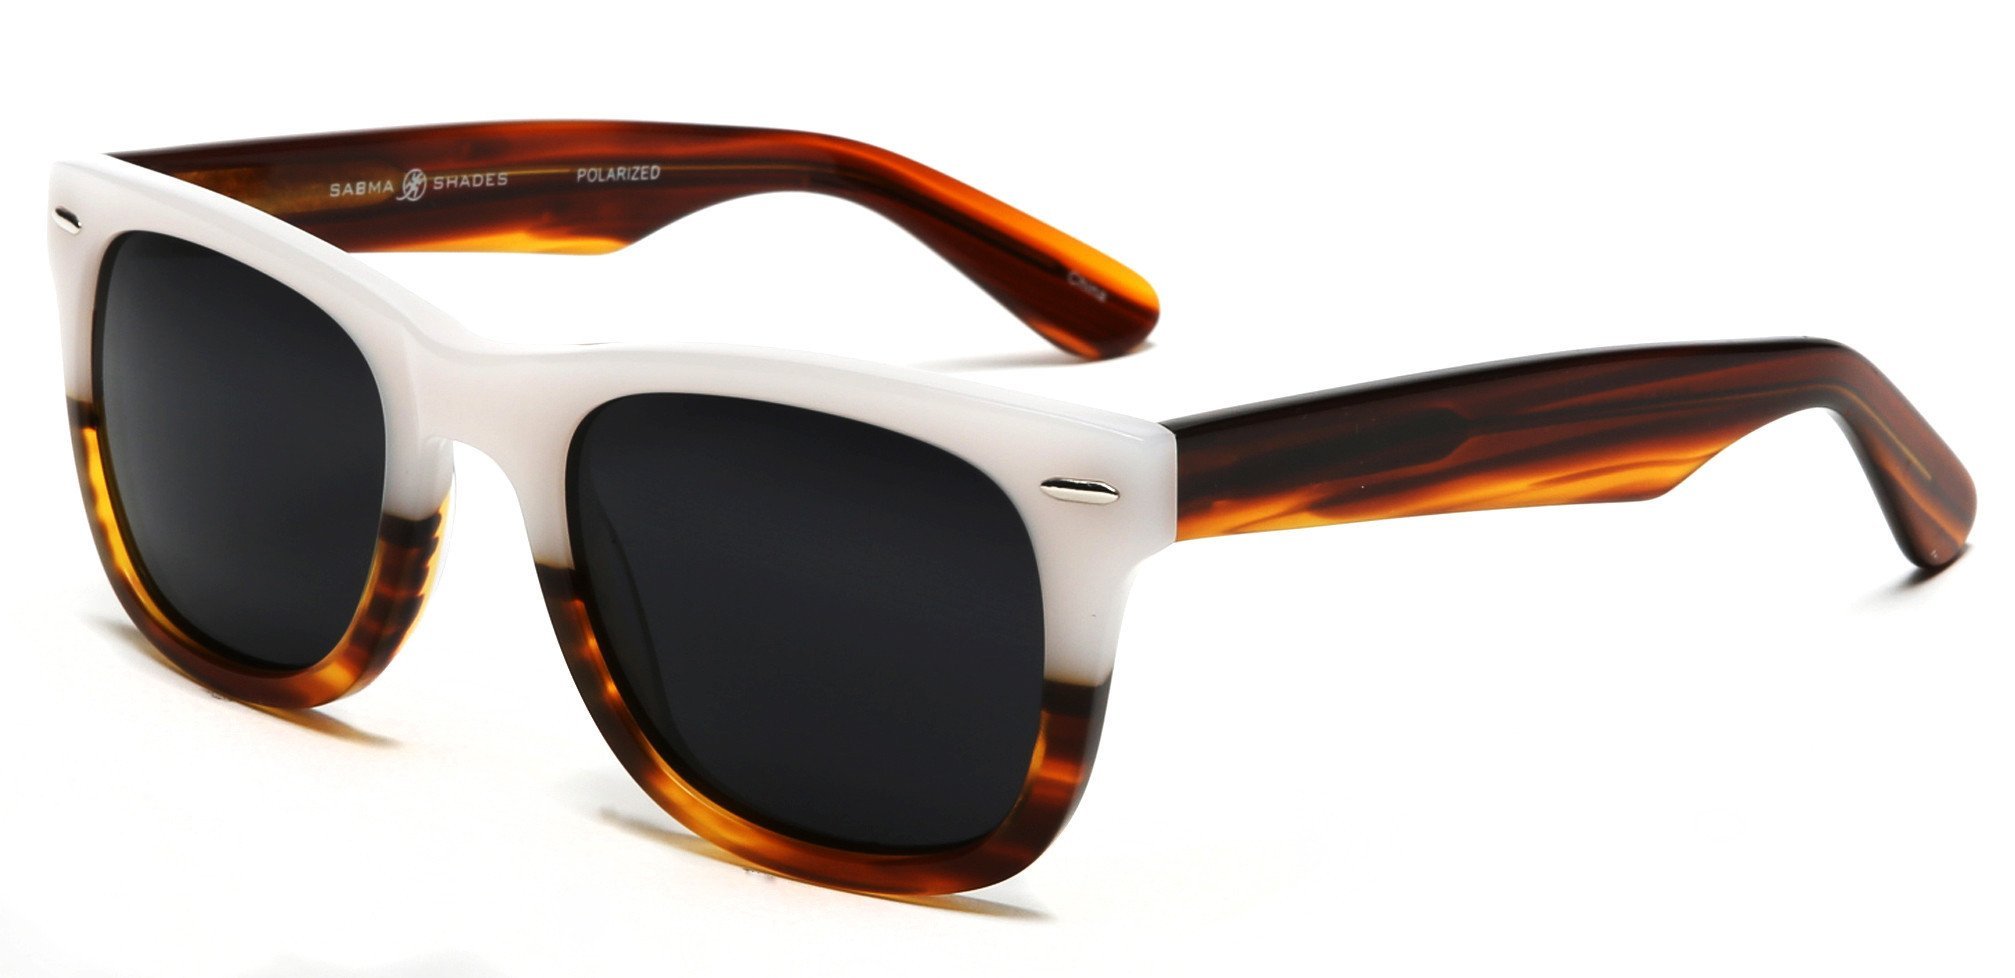 Verona Polarized Horn Rimmed Sunglasses White-Samba Shades